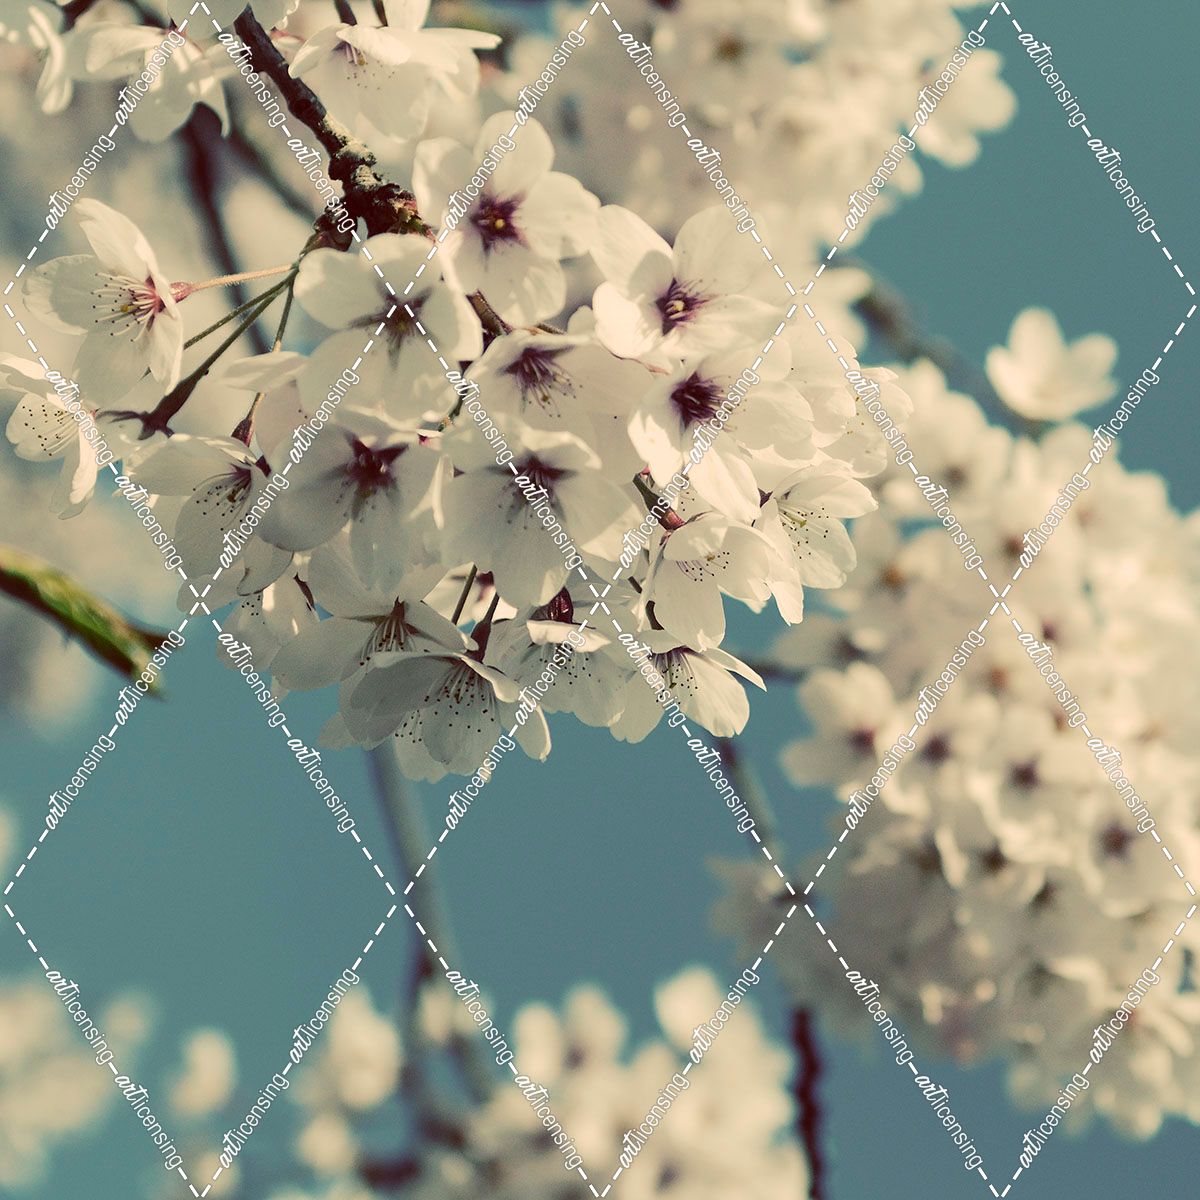 Spring Blossom on Tree 009